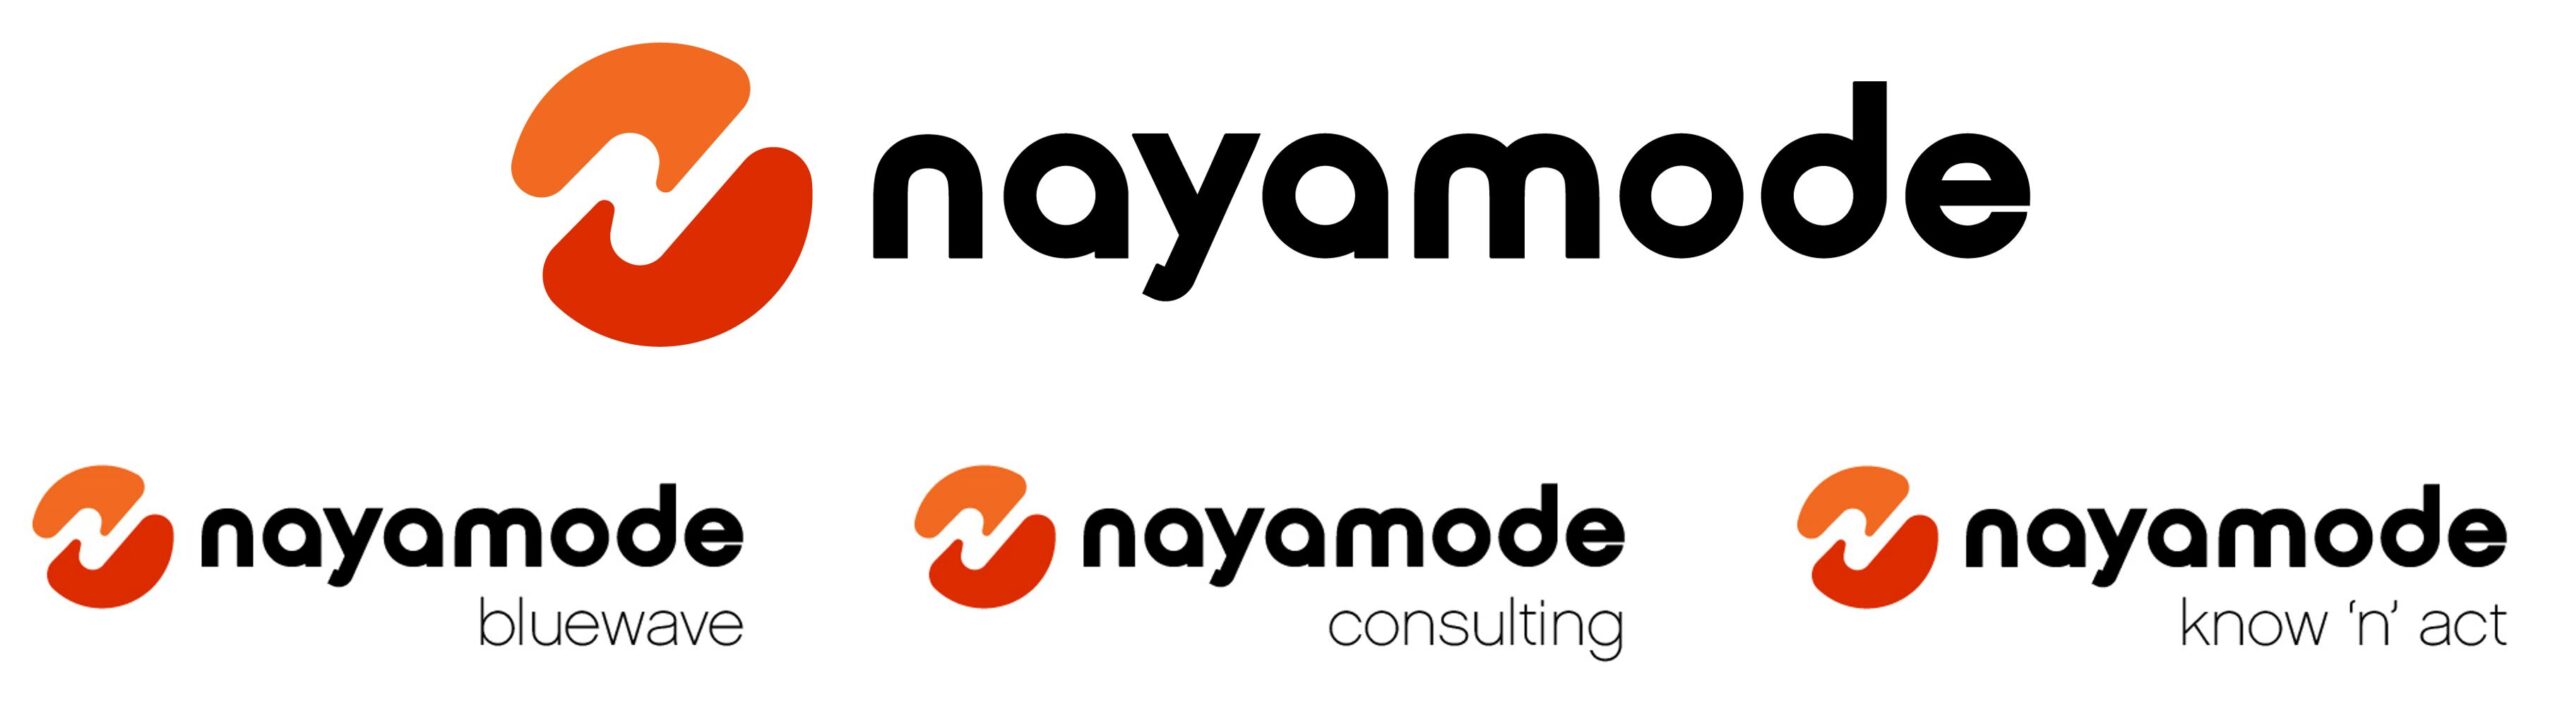 Nayamode logo family